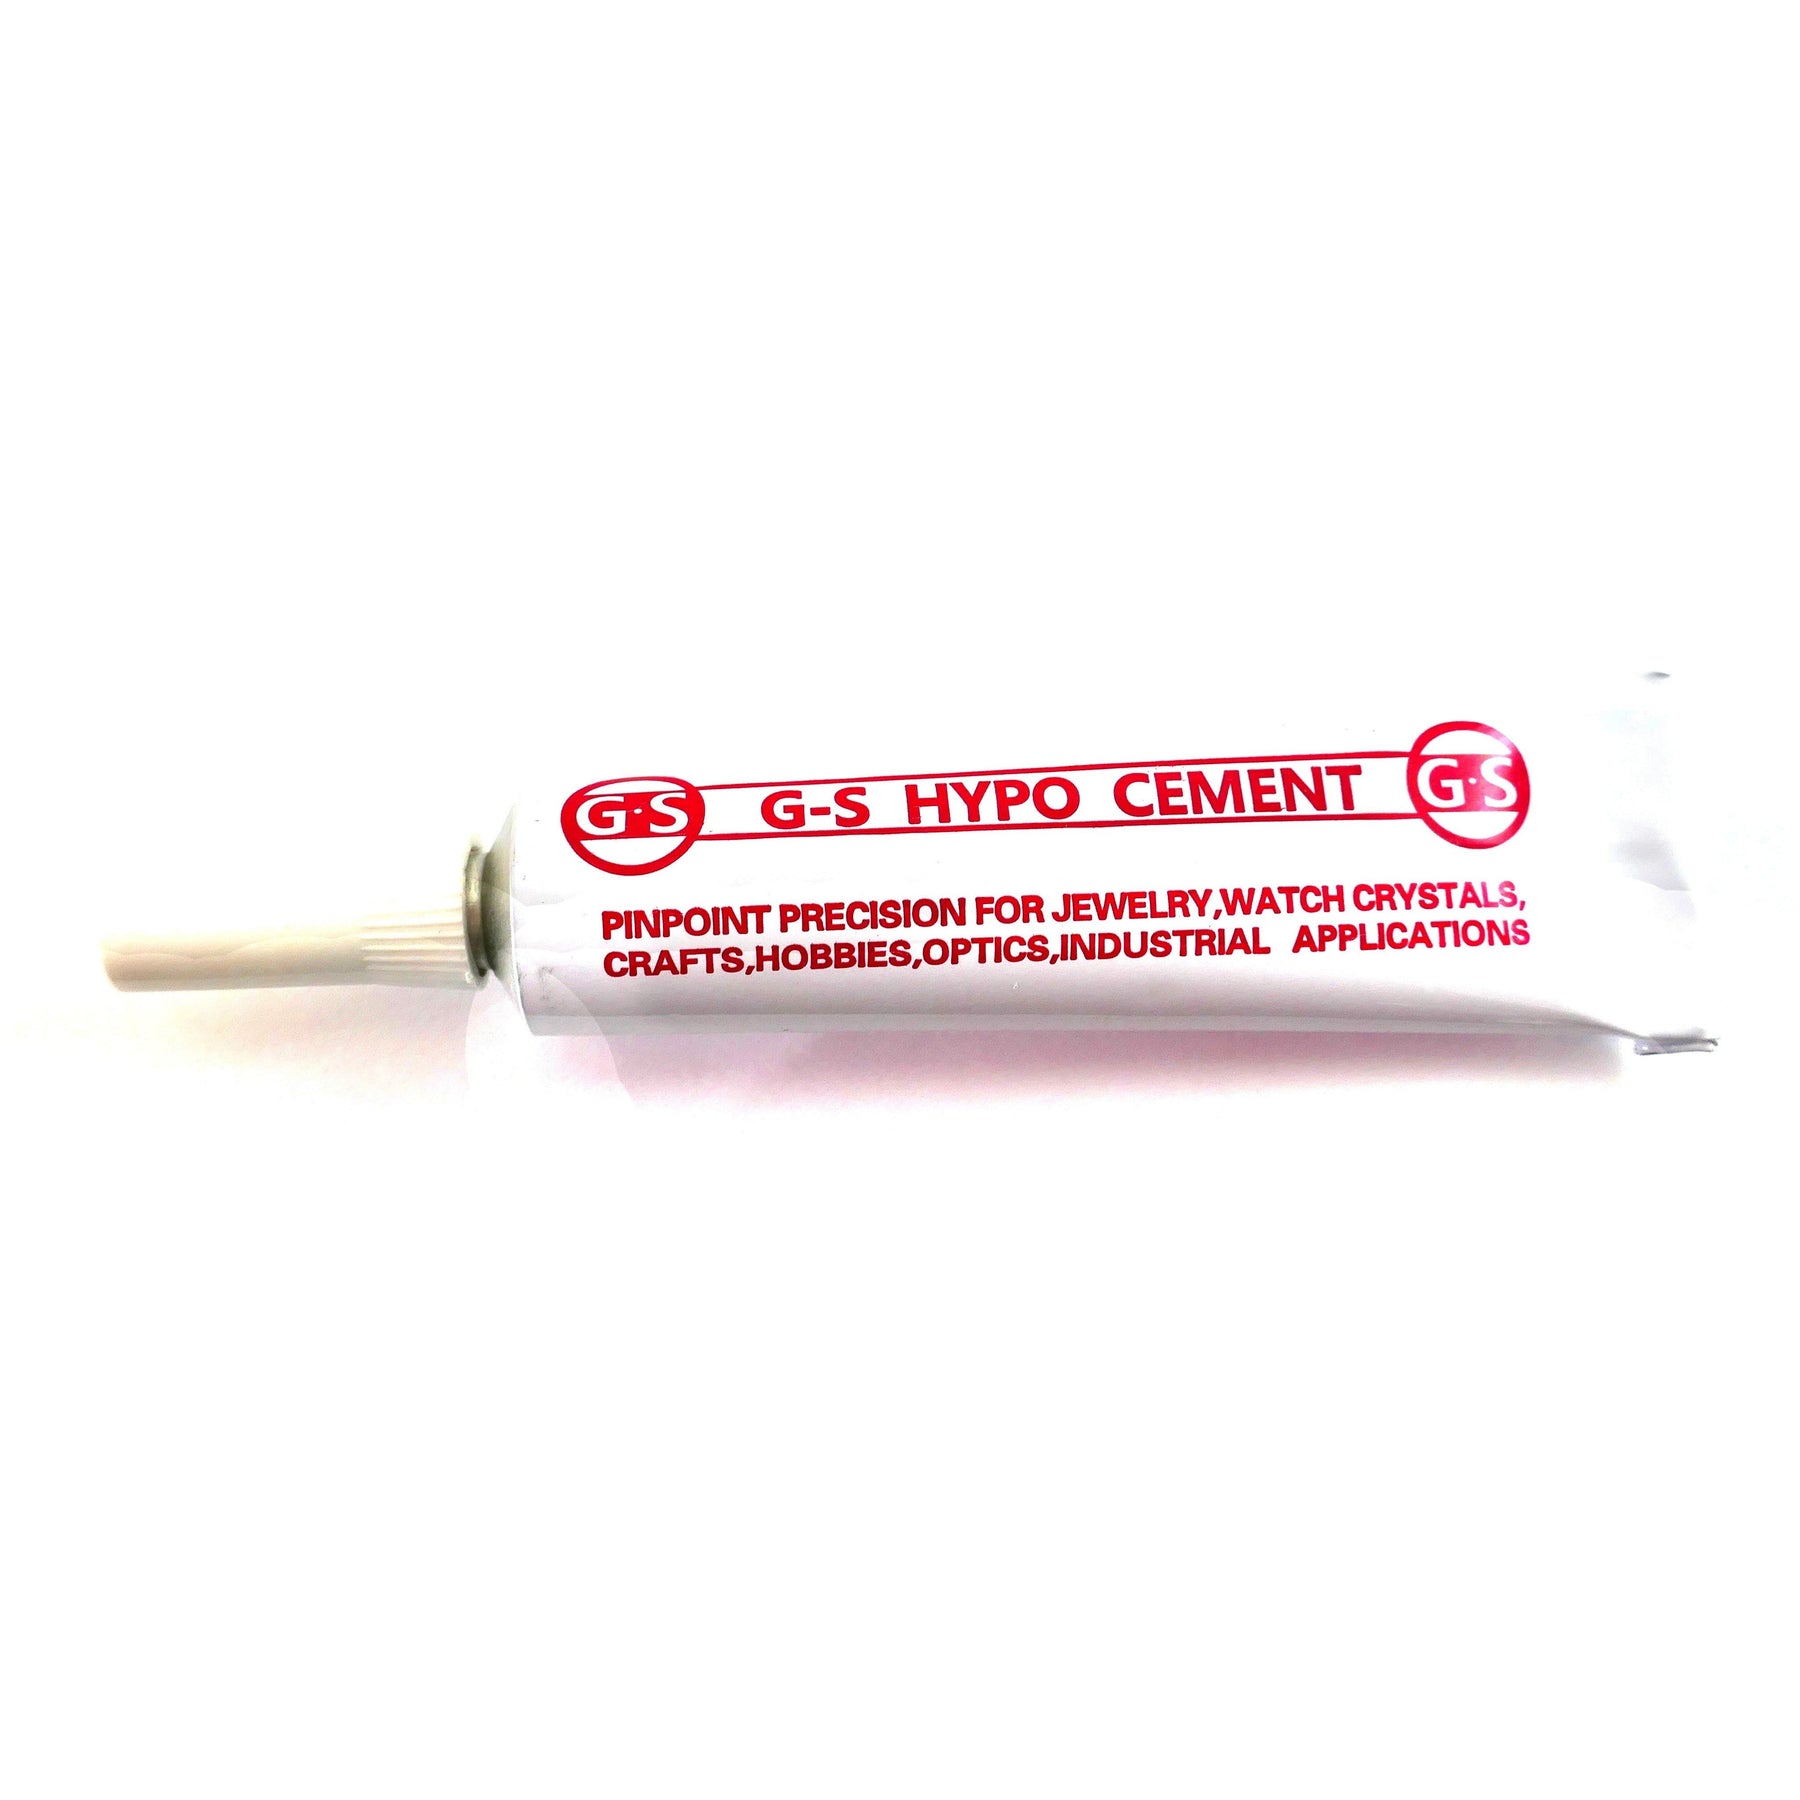 G-S Hypo Cement Glue